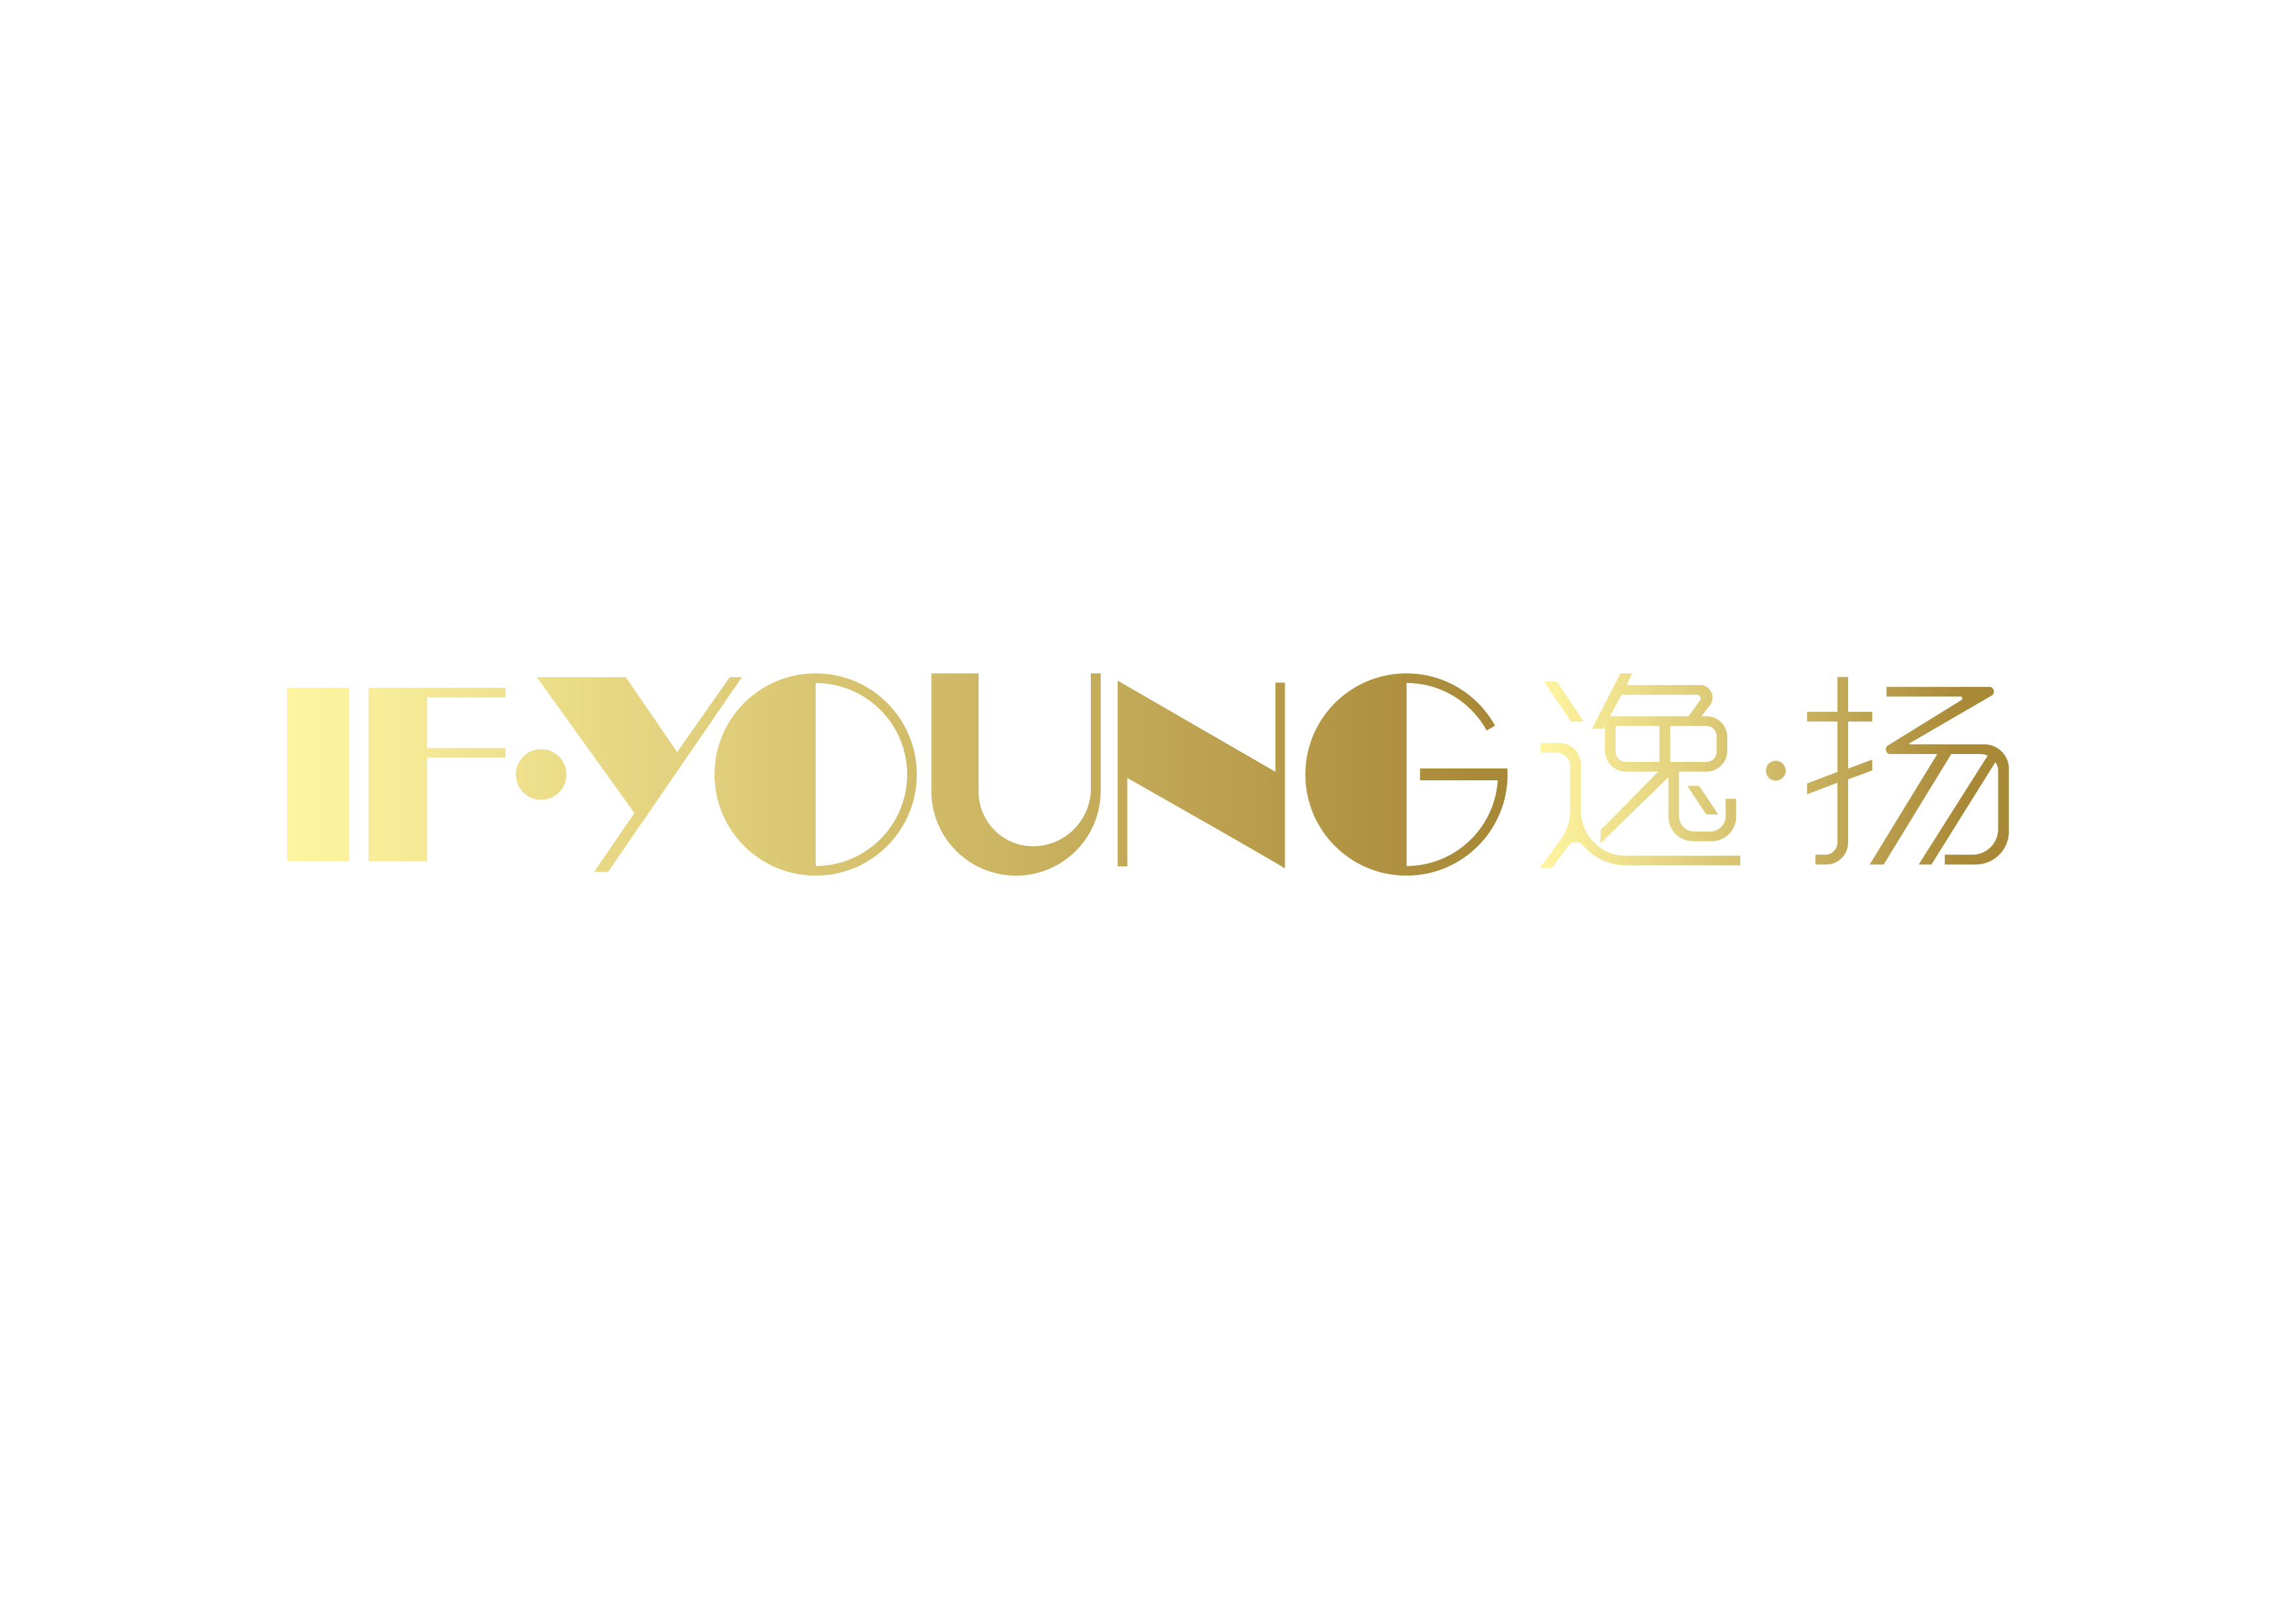 Yiyang (officially Henan Yiyang Co., Ltd.)